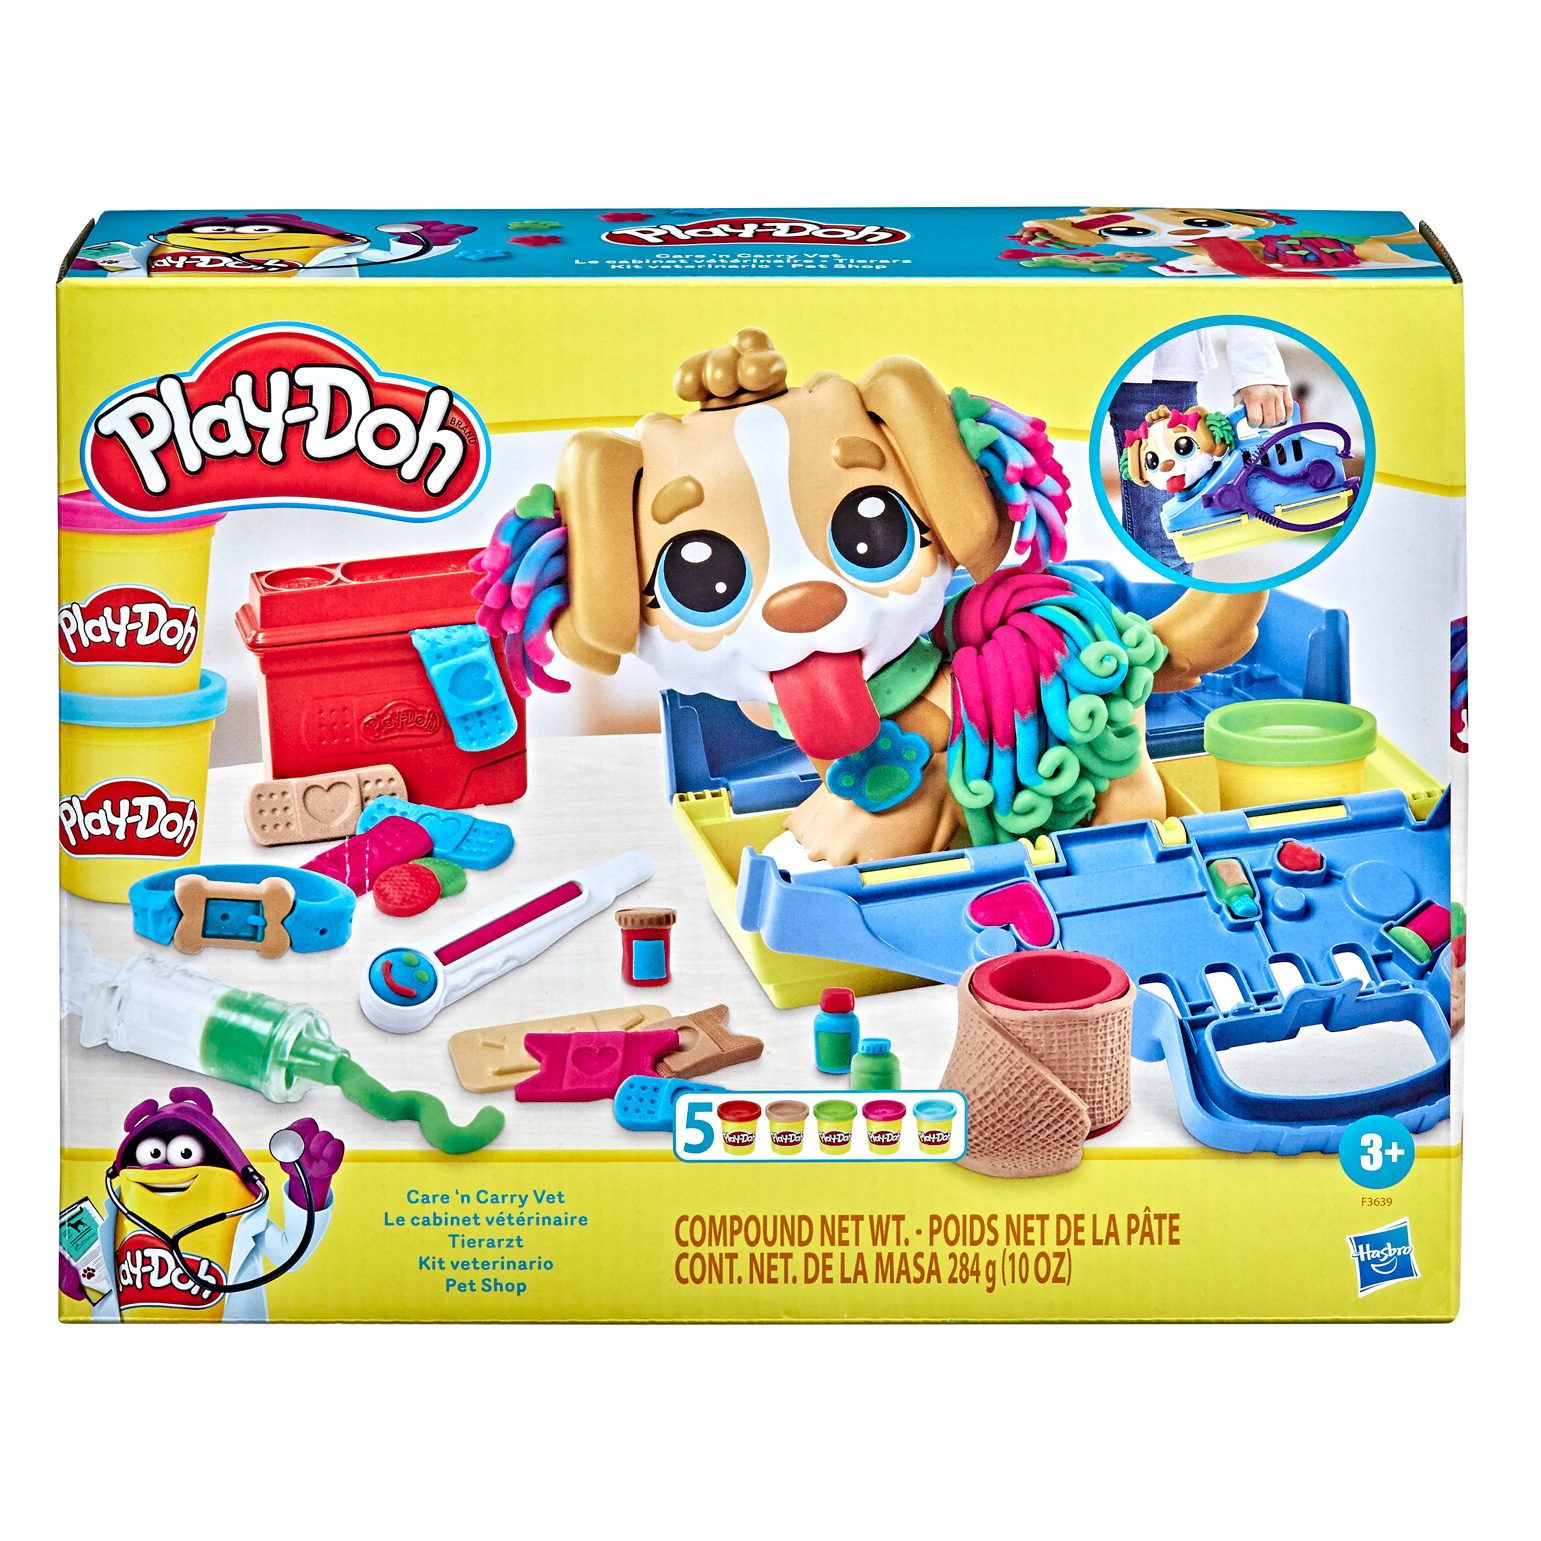 Konkurs! Wygraj nagrodę od Play-doh na Dzień Dziecka!